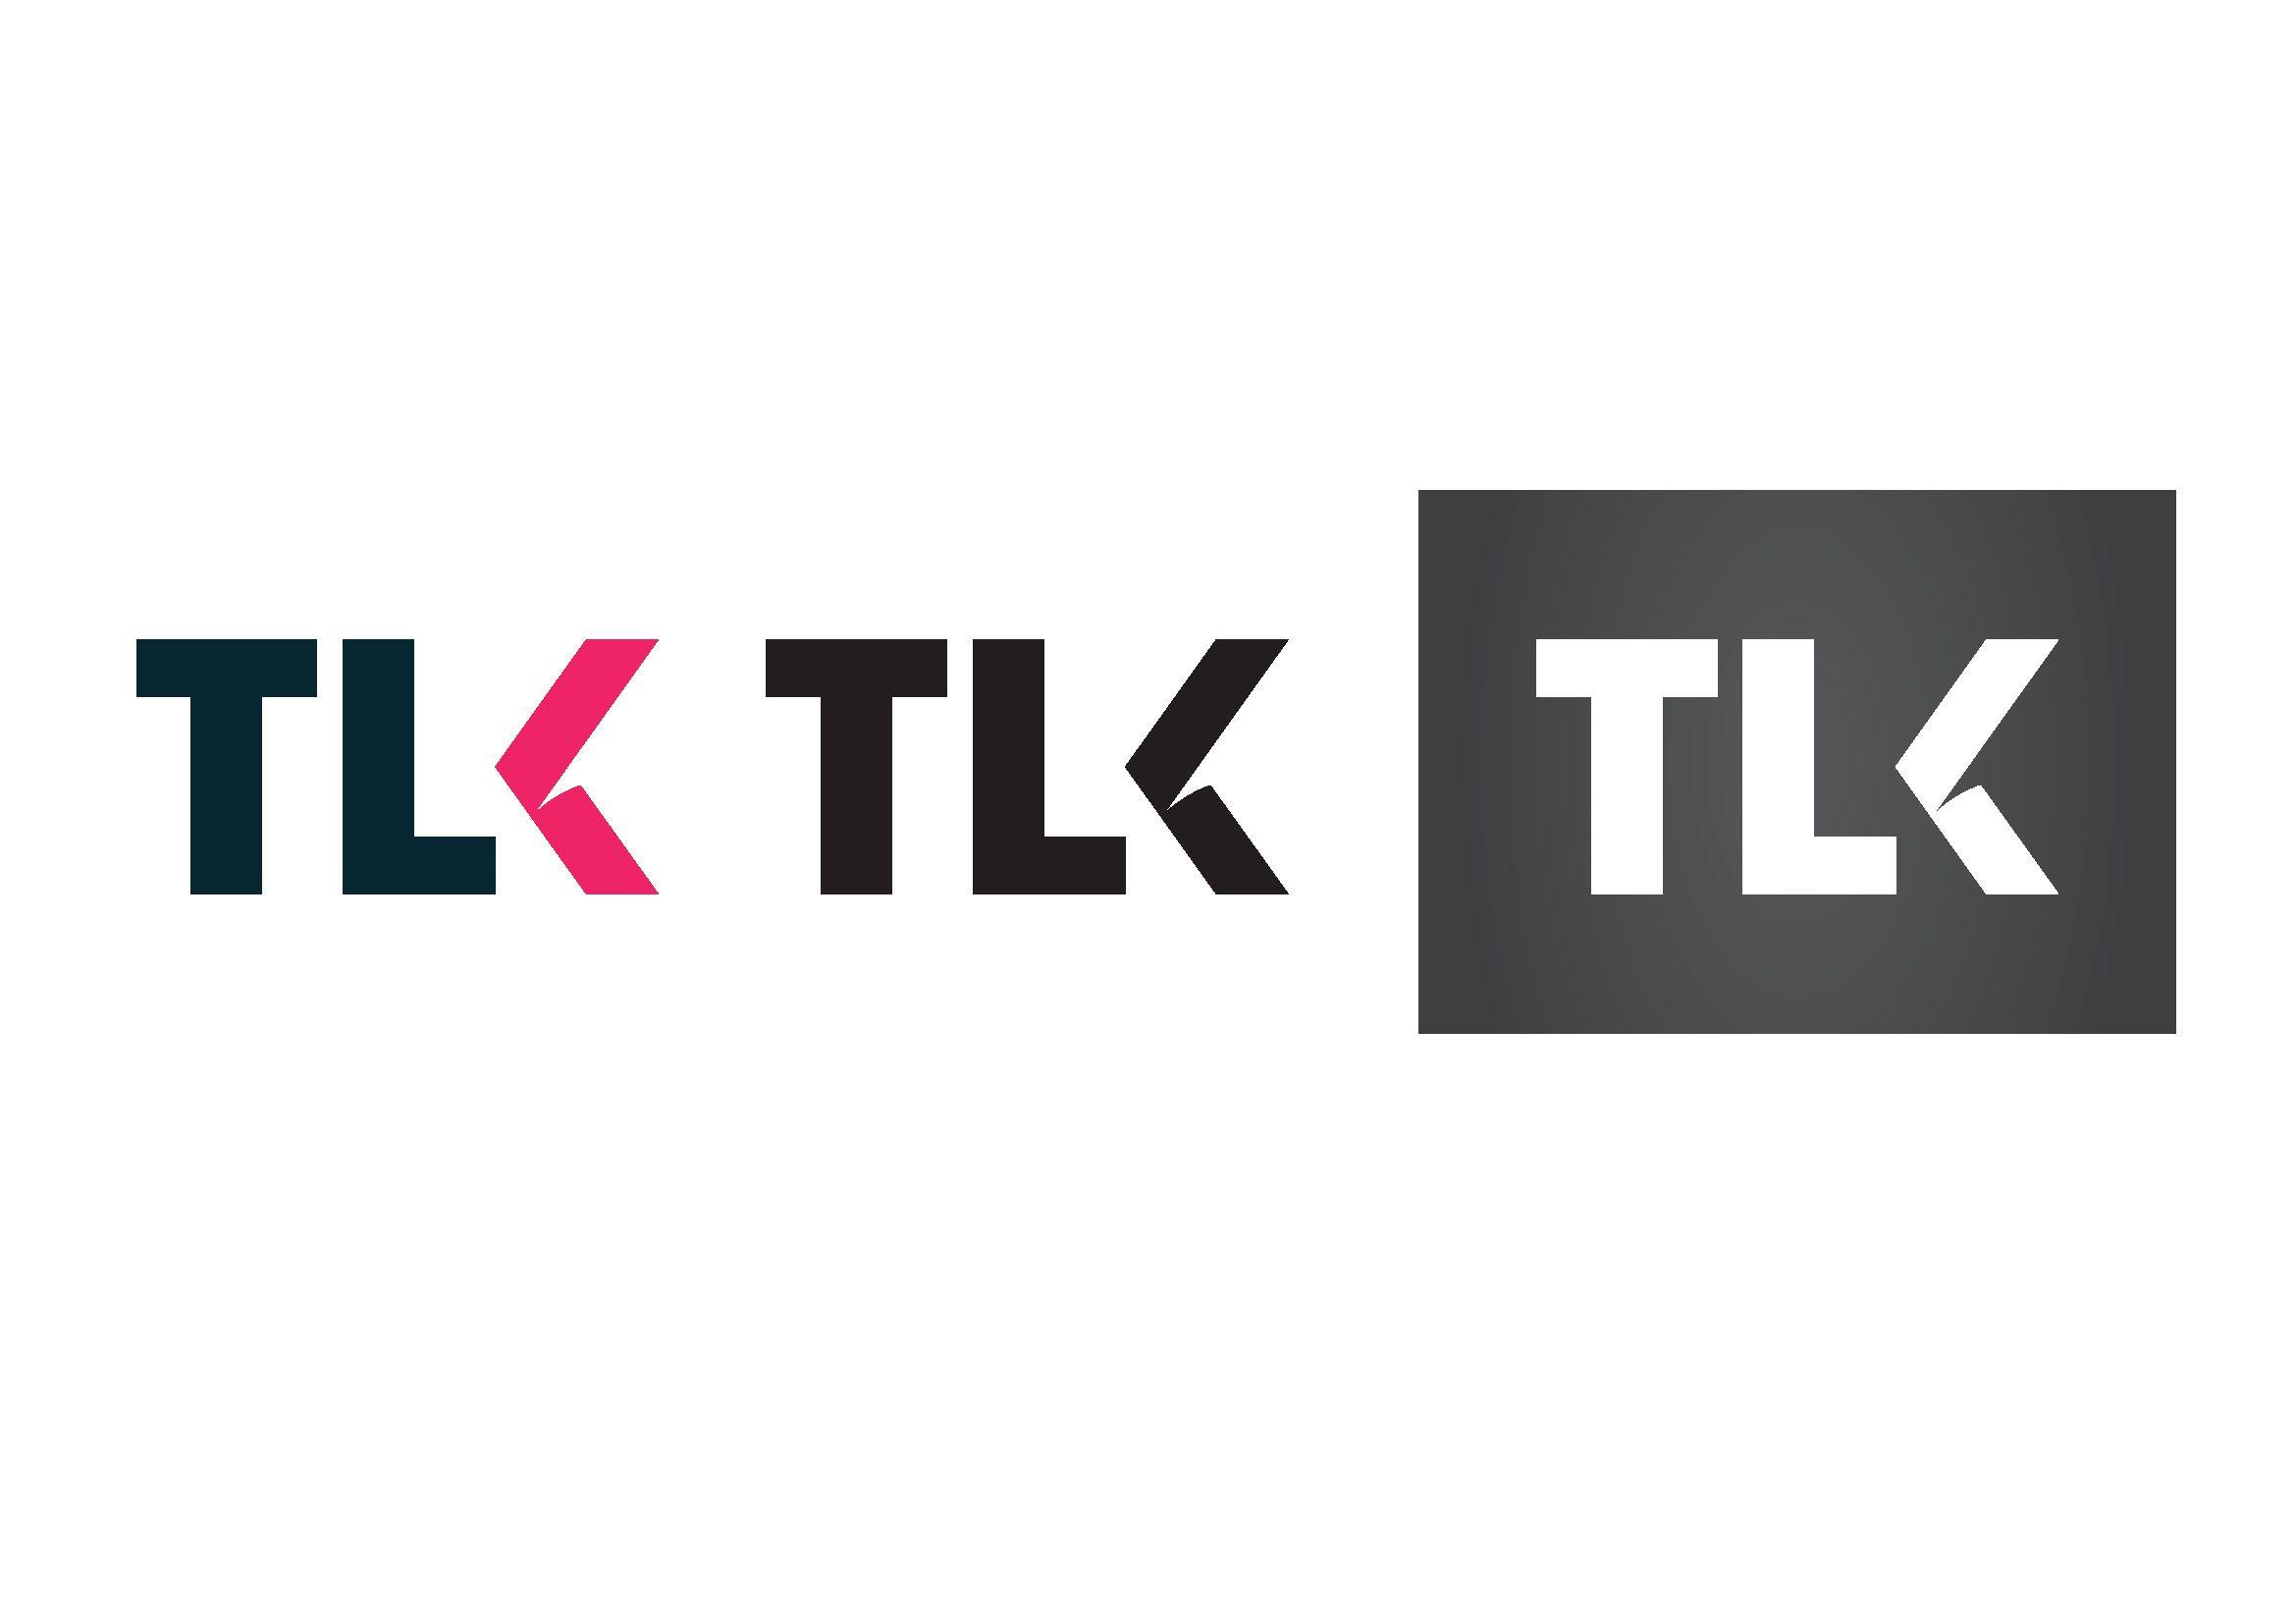 TLK Logo - Tlk rebranding proposal on Behance